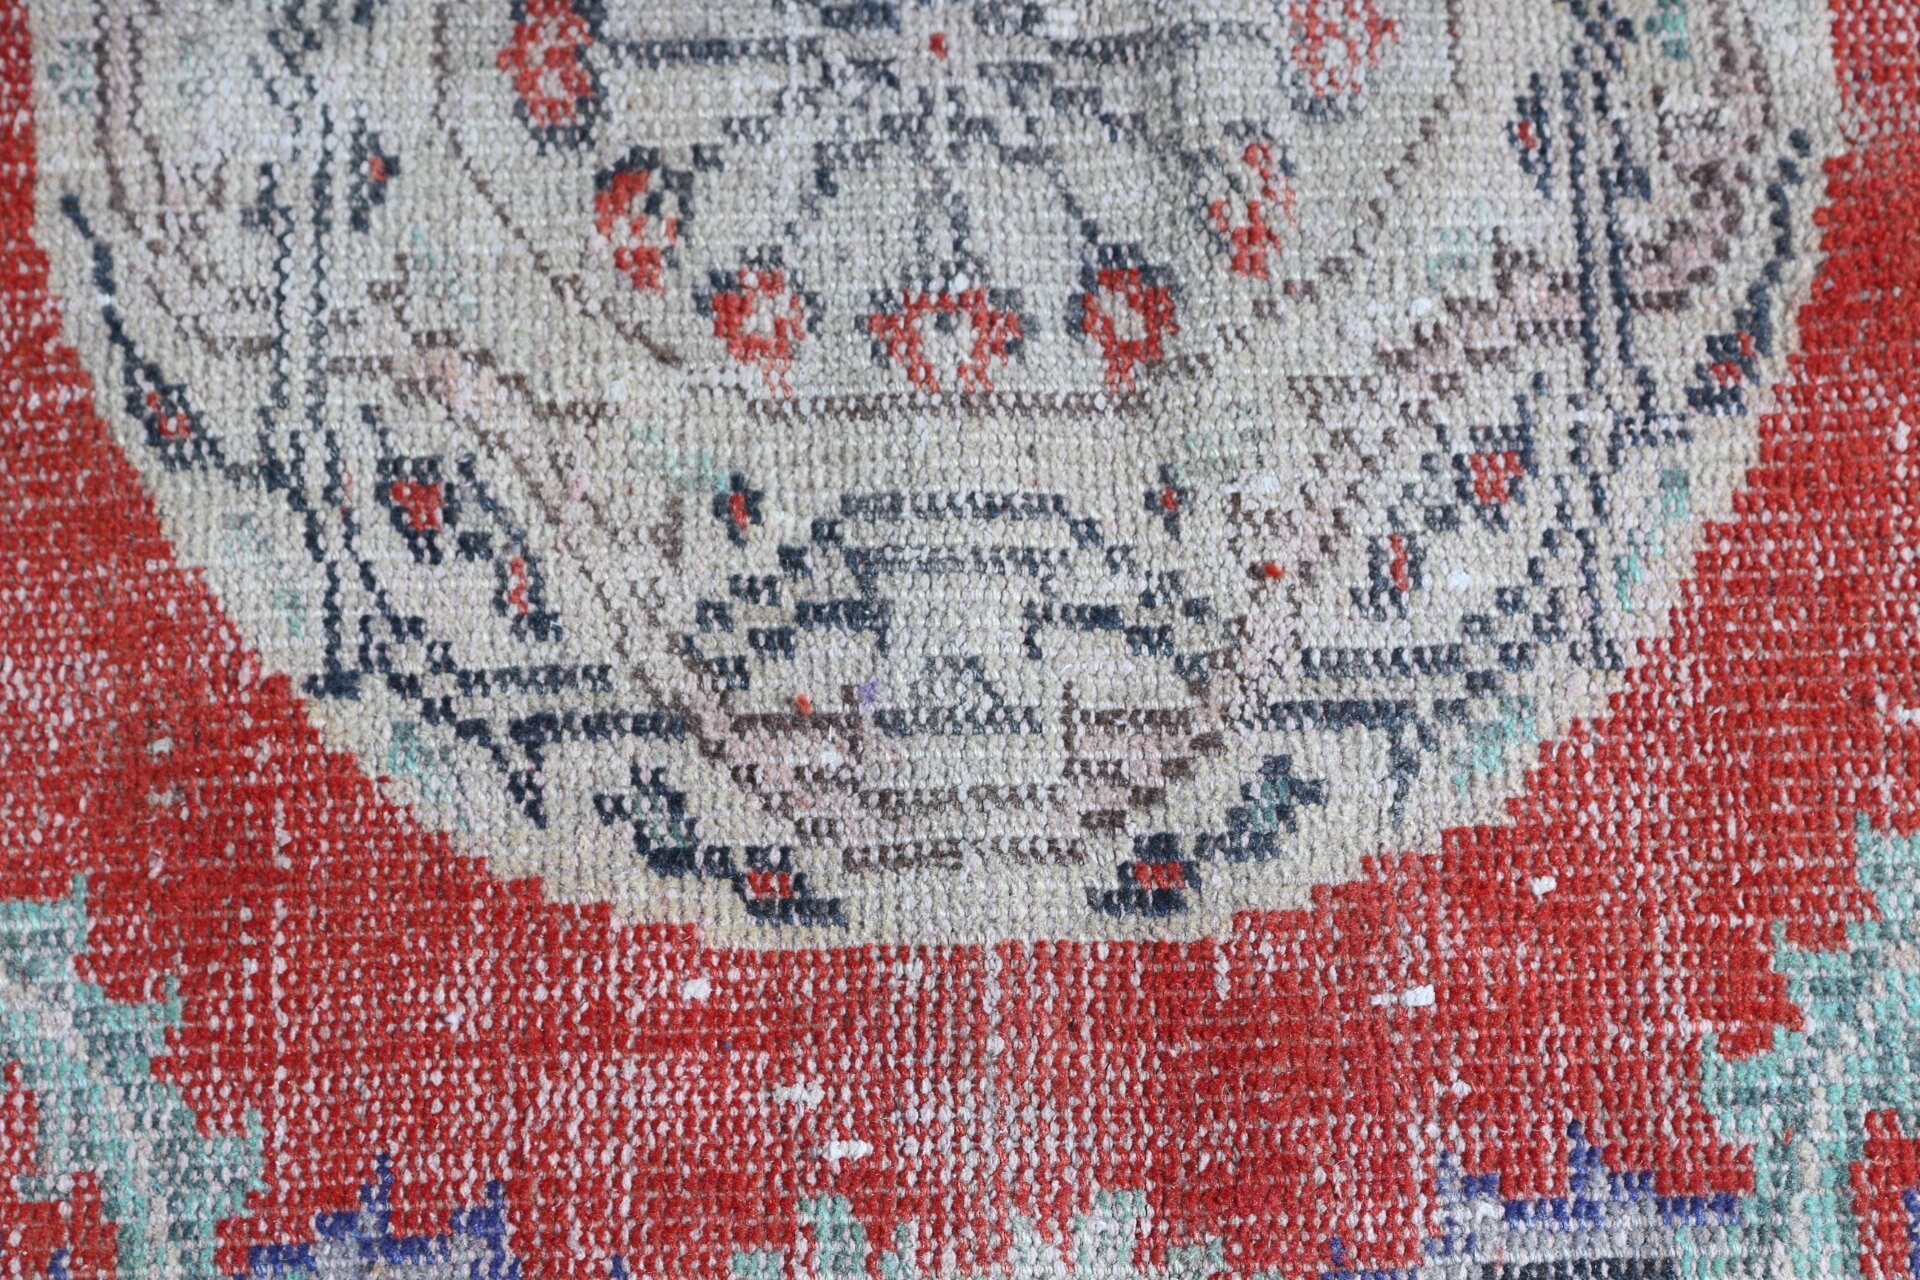 Moroccan Rug, Vintage Rug, Turkey Rug, Turkish Rugs, 2.9x8.5 ft Runner Rug, Corridor Rug, Red Oushak Rugs, Oriental Rug, Rugs for Stair